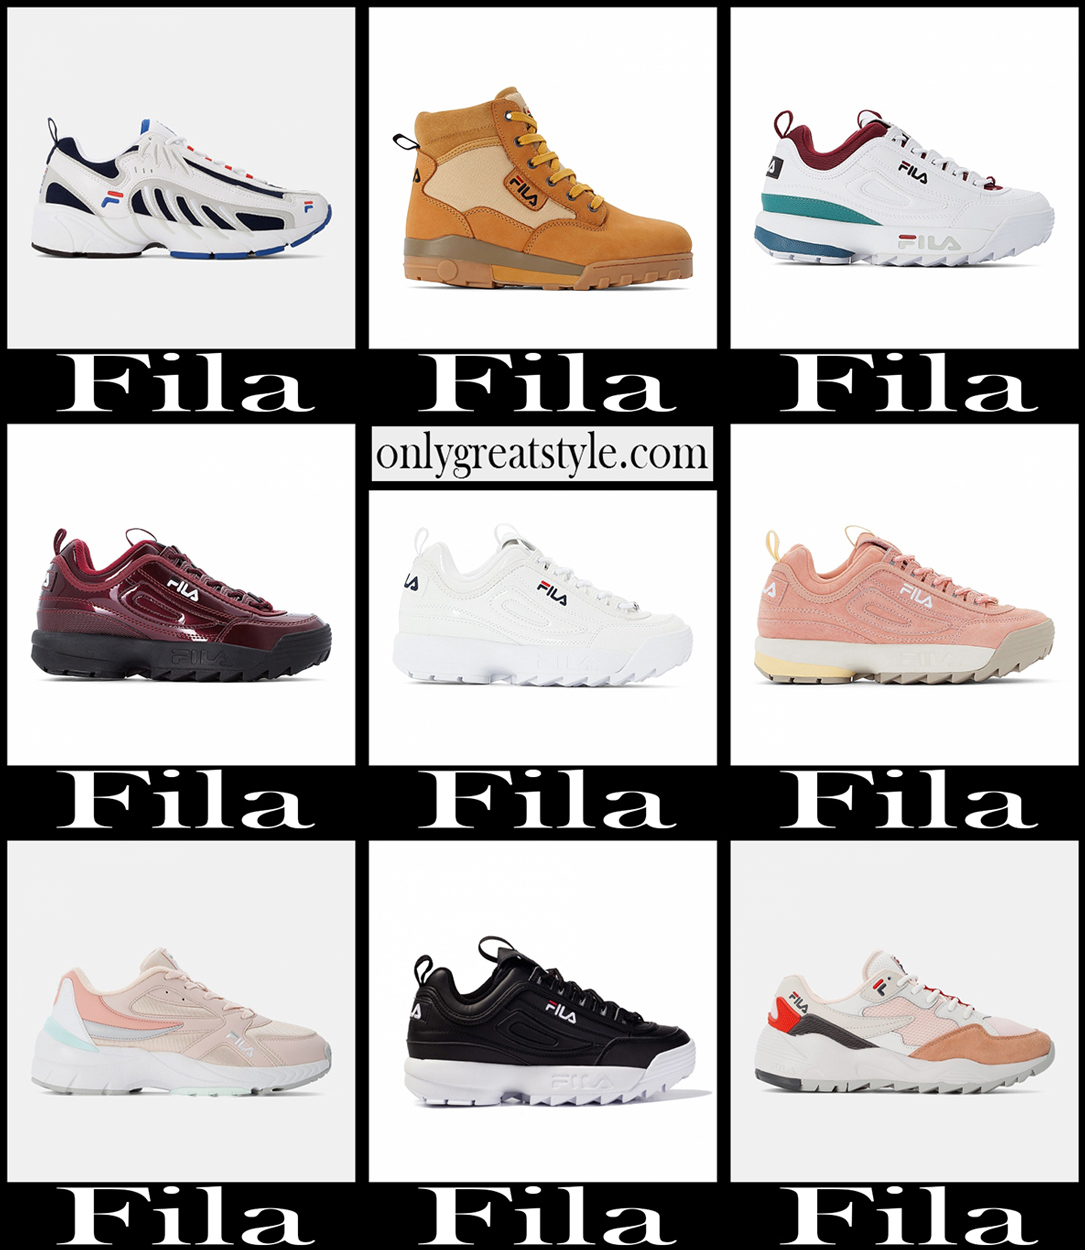 Fila shoes 20-2021 fall winter women's footwear